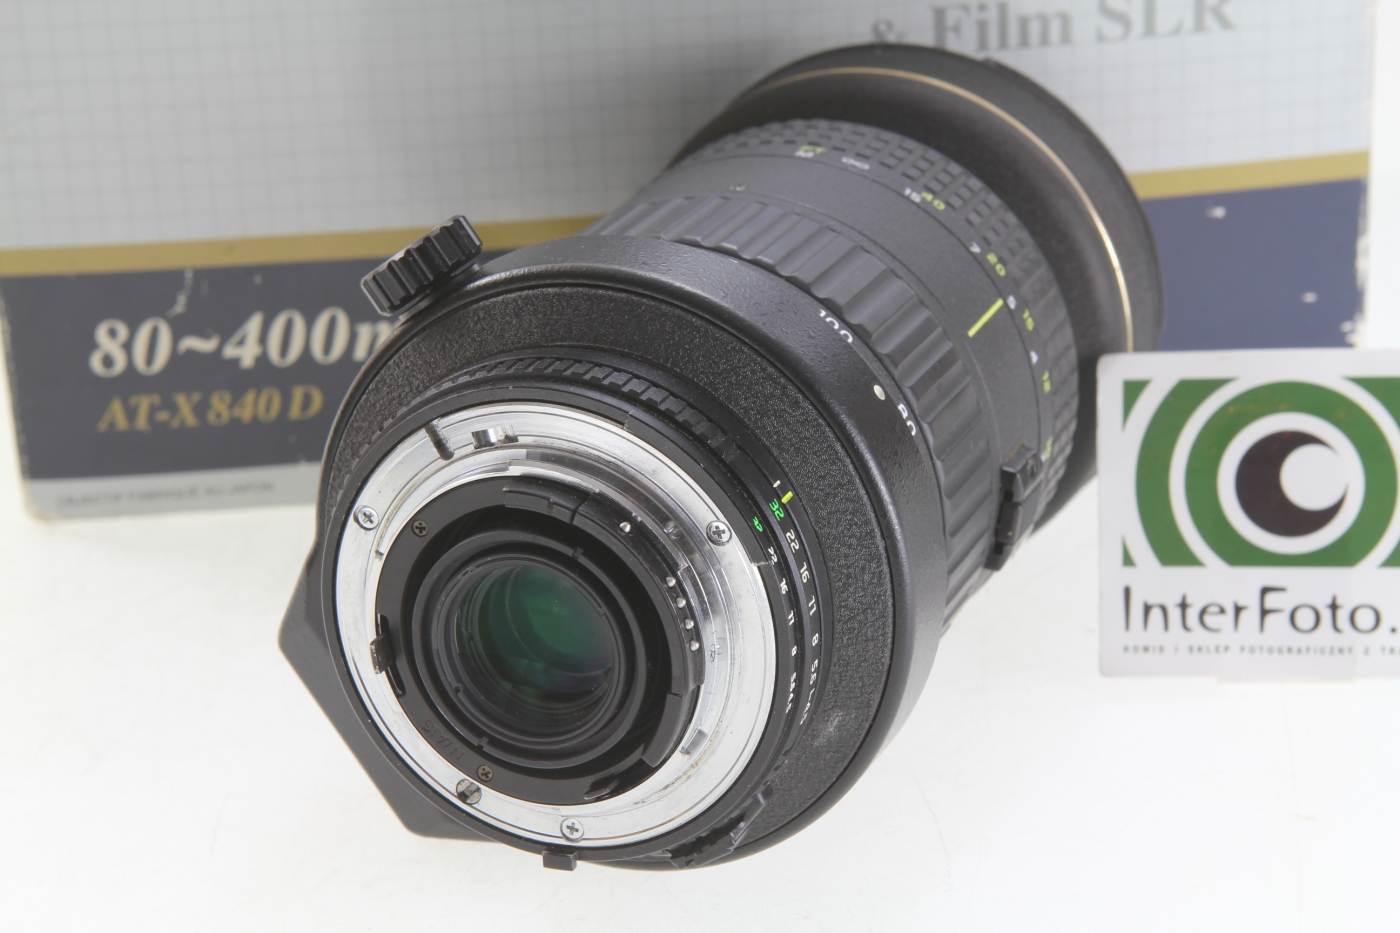 Tokina 望遠ズームレンズ AT-X 840 D 80-400mm F4.5-5.6 ニコン用 フィルム/デジタル一眼対応 